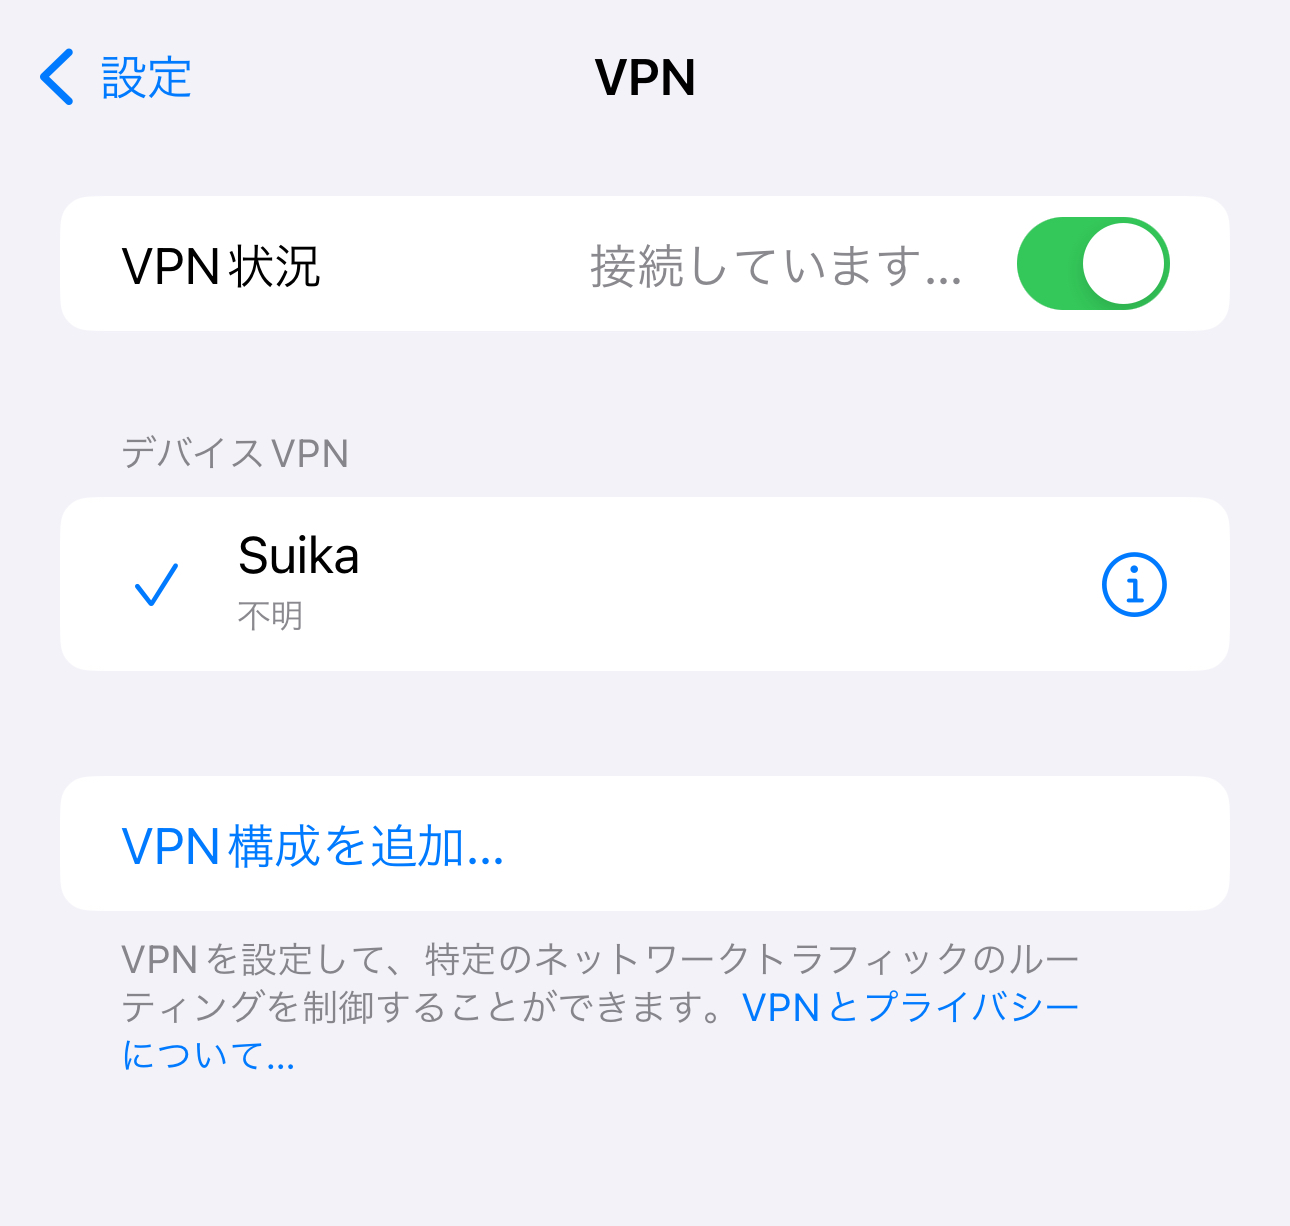 中国からスイカVPNとiPhoneを使って、日本サーバー以外へ通信を試みて失敗した画像